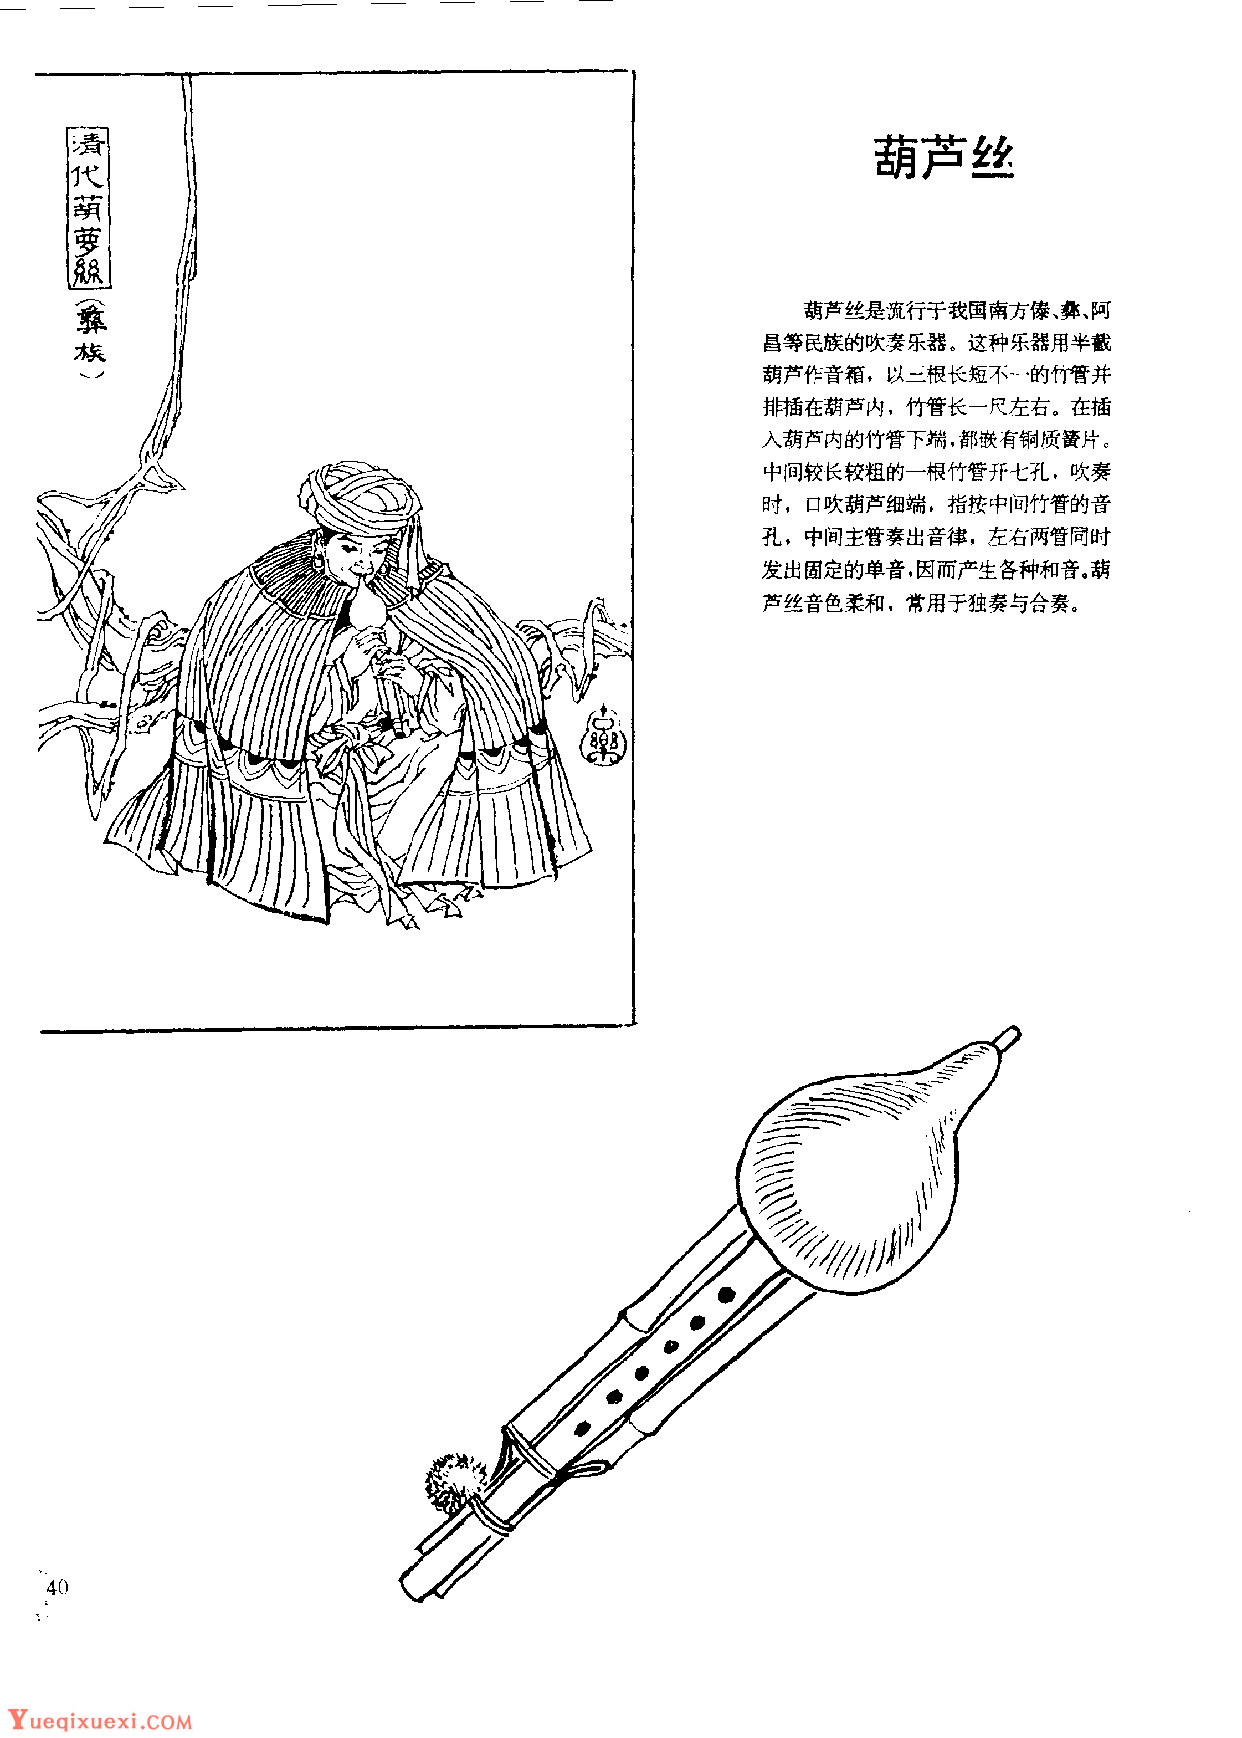 中国古代乐器《葫芦丝》